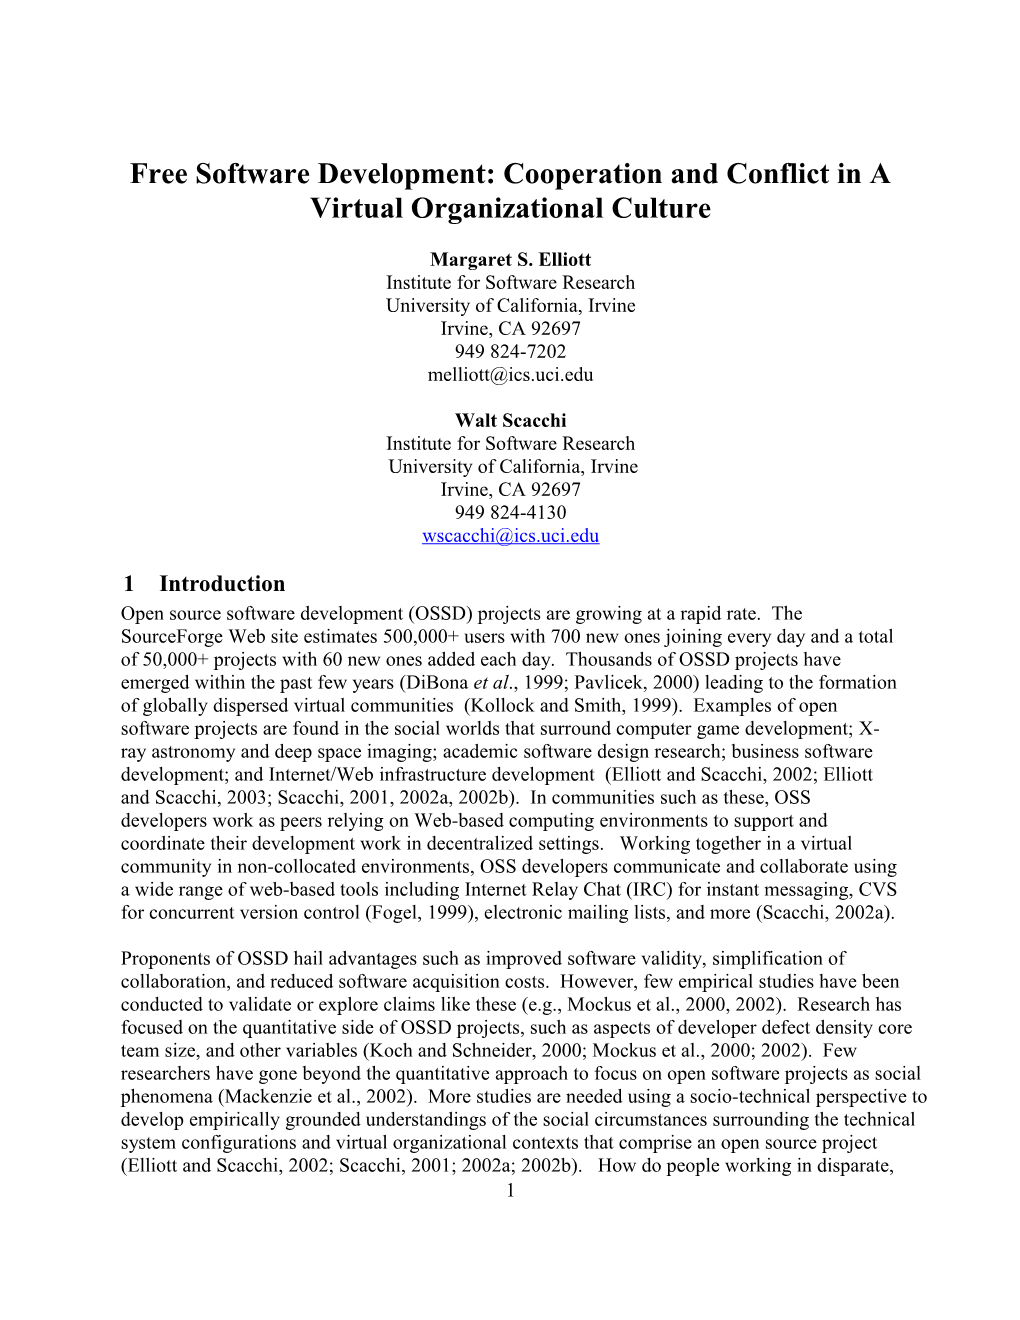 Open Software Development: Organizational Culture in a Virtual